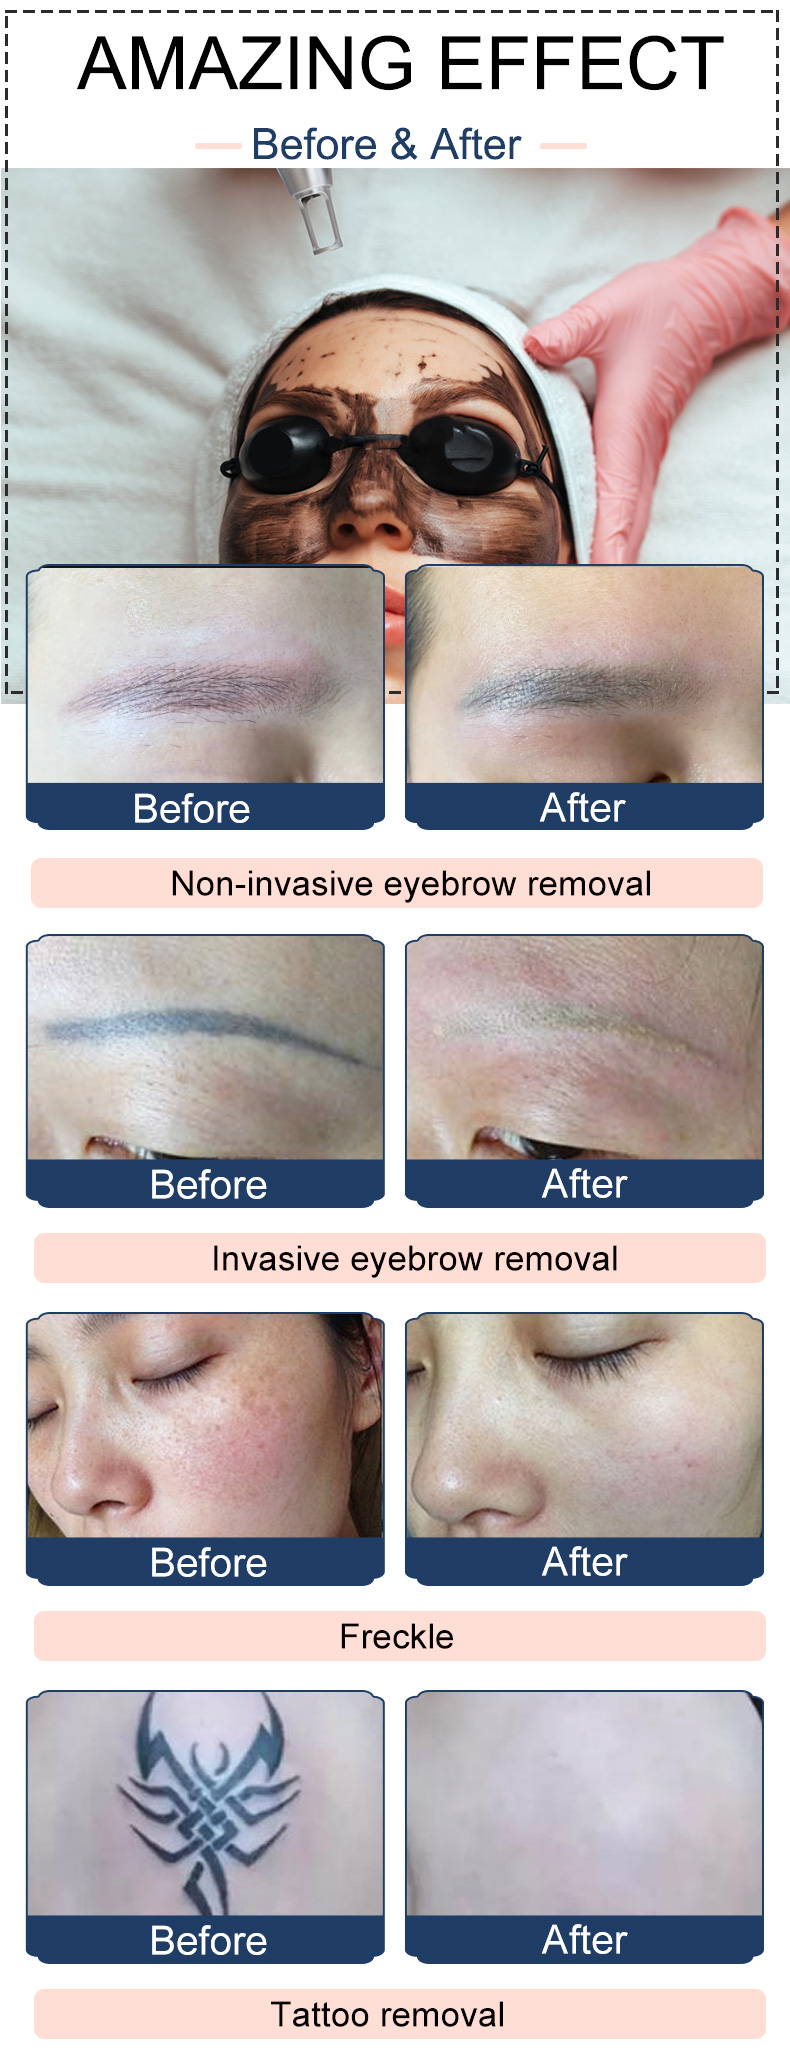 How do HIFU skin treatments work?